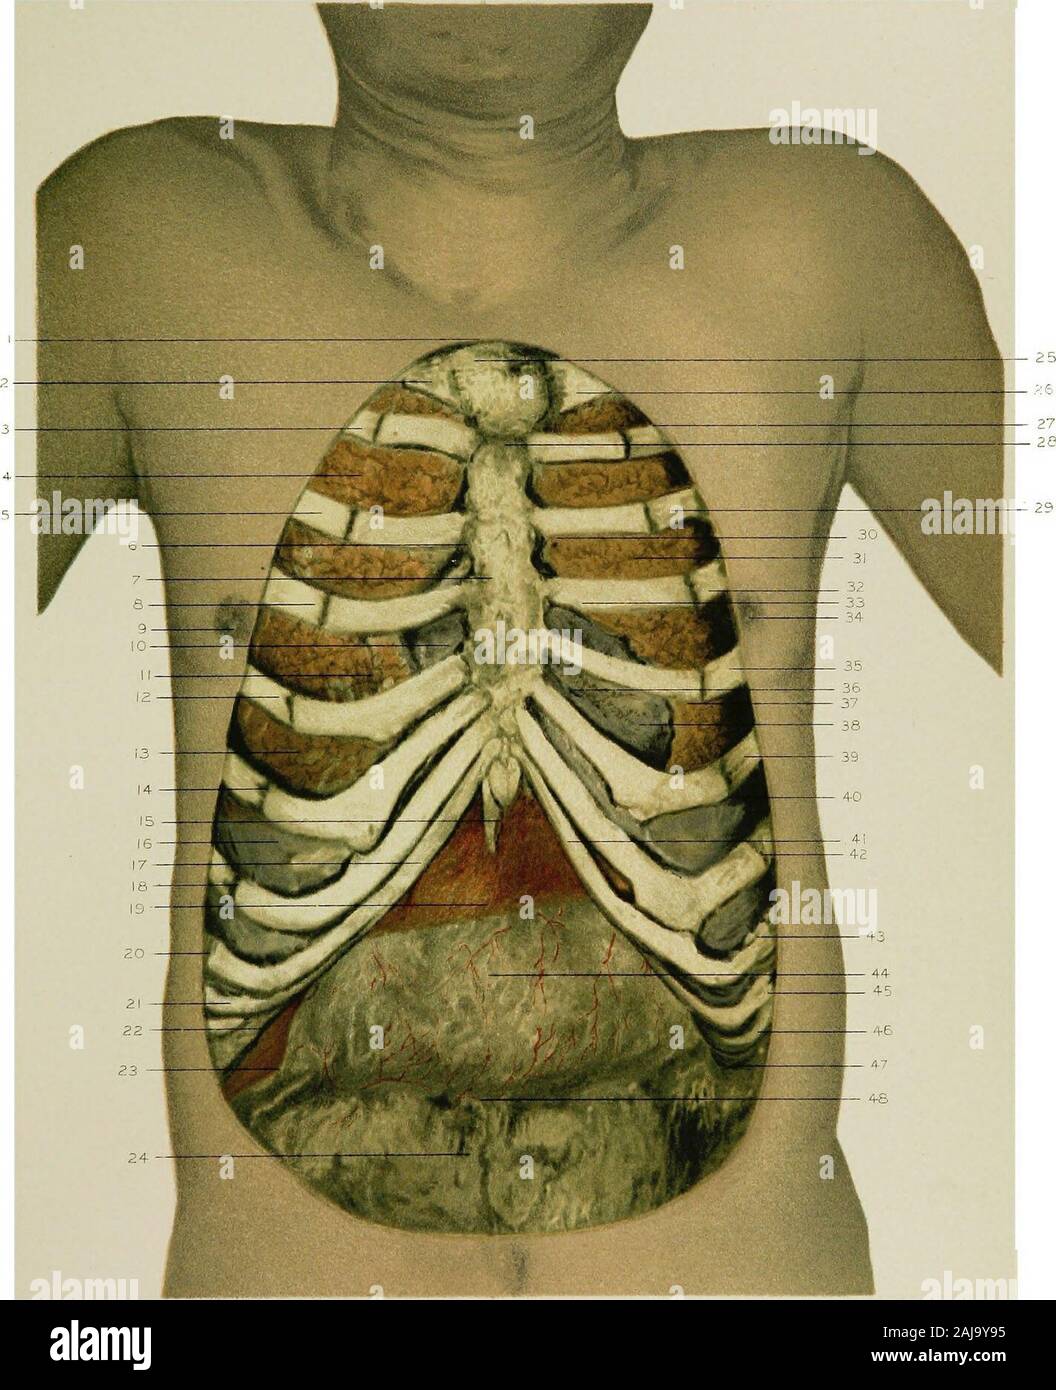 Anatomia regionale nella sua relazione alla medicina e chirurgia . e posizione delle valvole polmonari. 31. Il lobo superiore del polmone sinistro. 32. Sinistra quarta nervatura. 33. La posizione della valvola mitrale. 34. Il nipplo di sinistra.36. Sinistra quinta costola. 36. Il ventricolo destro del cuore. 37. La posizione dell'apice battere nell'adulto. 88. La superficie superiore del diaframma, visto tra la quinta e la sesta nervature.S9. Sinistra sesta costola. 40. Il bordo inferiore del polmone sinistro. 41. La cartilagine della sinistra ottava costola, indipendentemente con- nesso con lo sterno. 42. Sinistra settima costola. 43. Sinistra ottavo ri Foto Stock